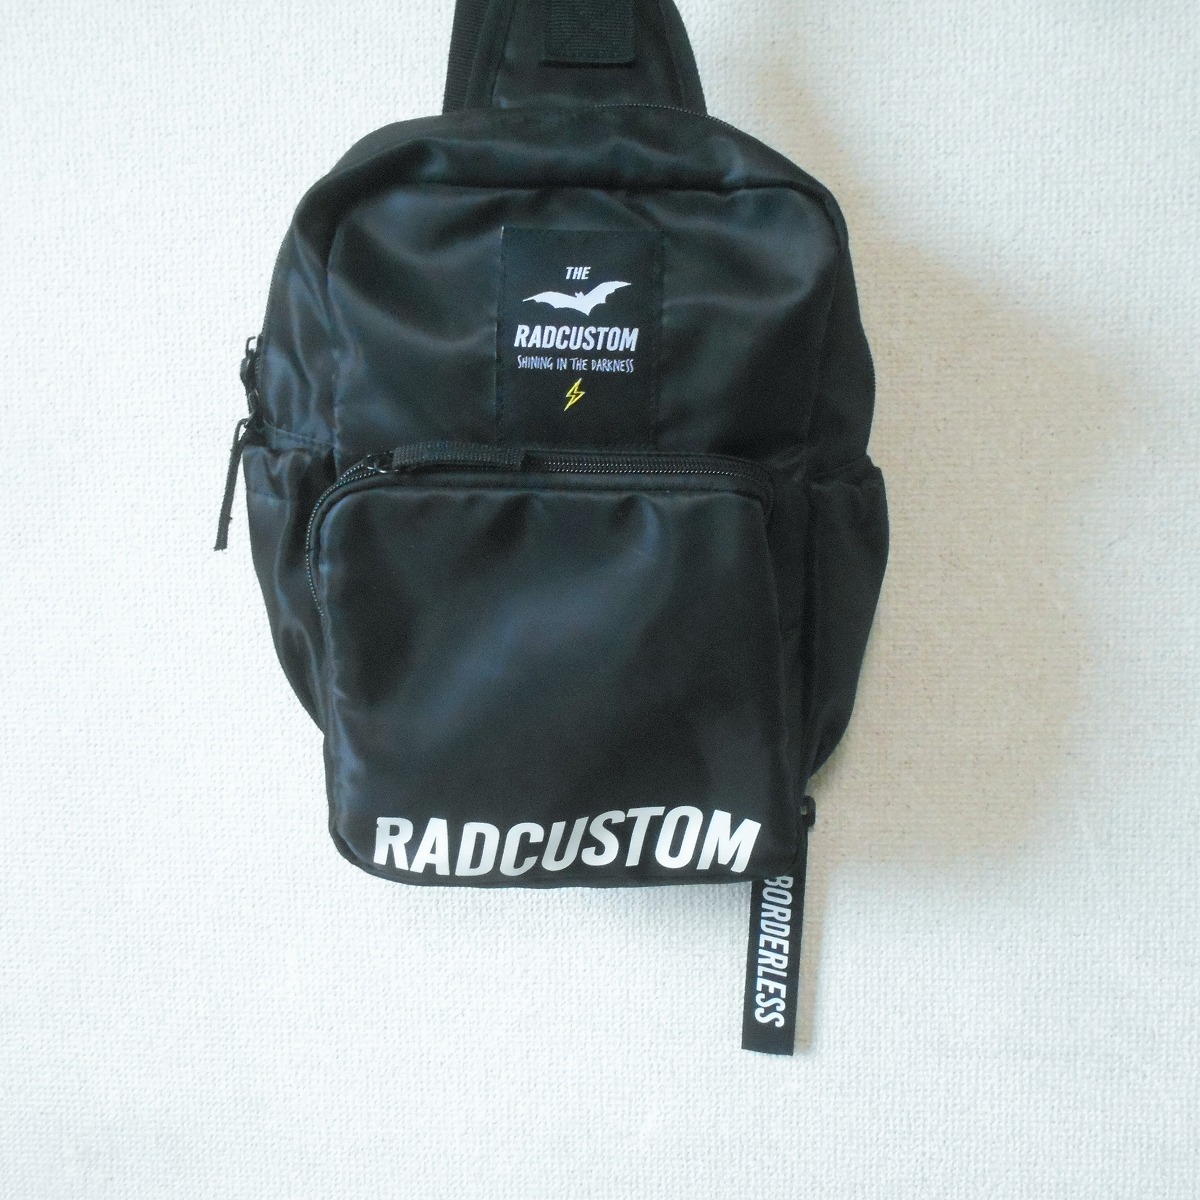  Lad custom RAD CUSTOM one shoulder bag rucksack Kids child clothes man 